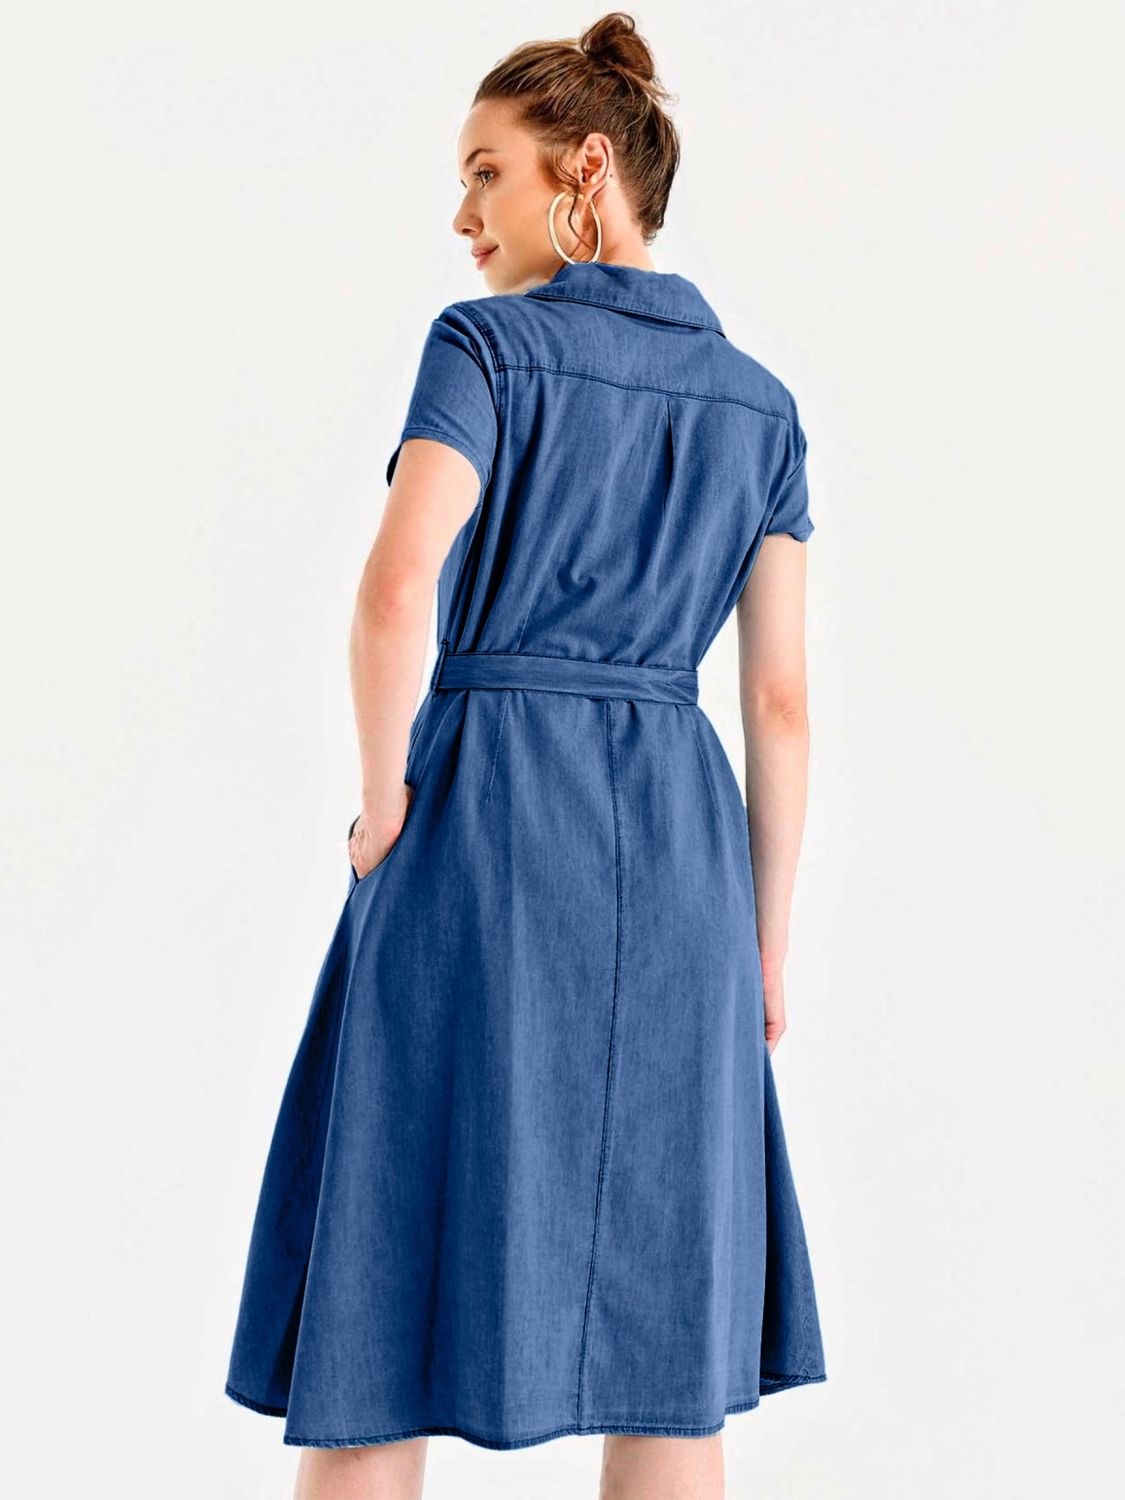 Літня джинсова сукня сорочка синього кольору - фото